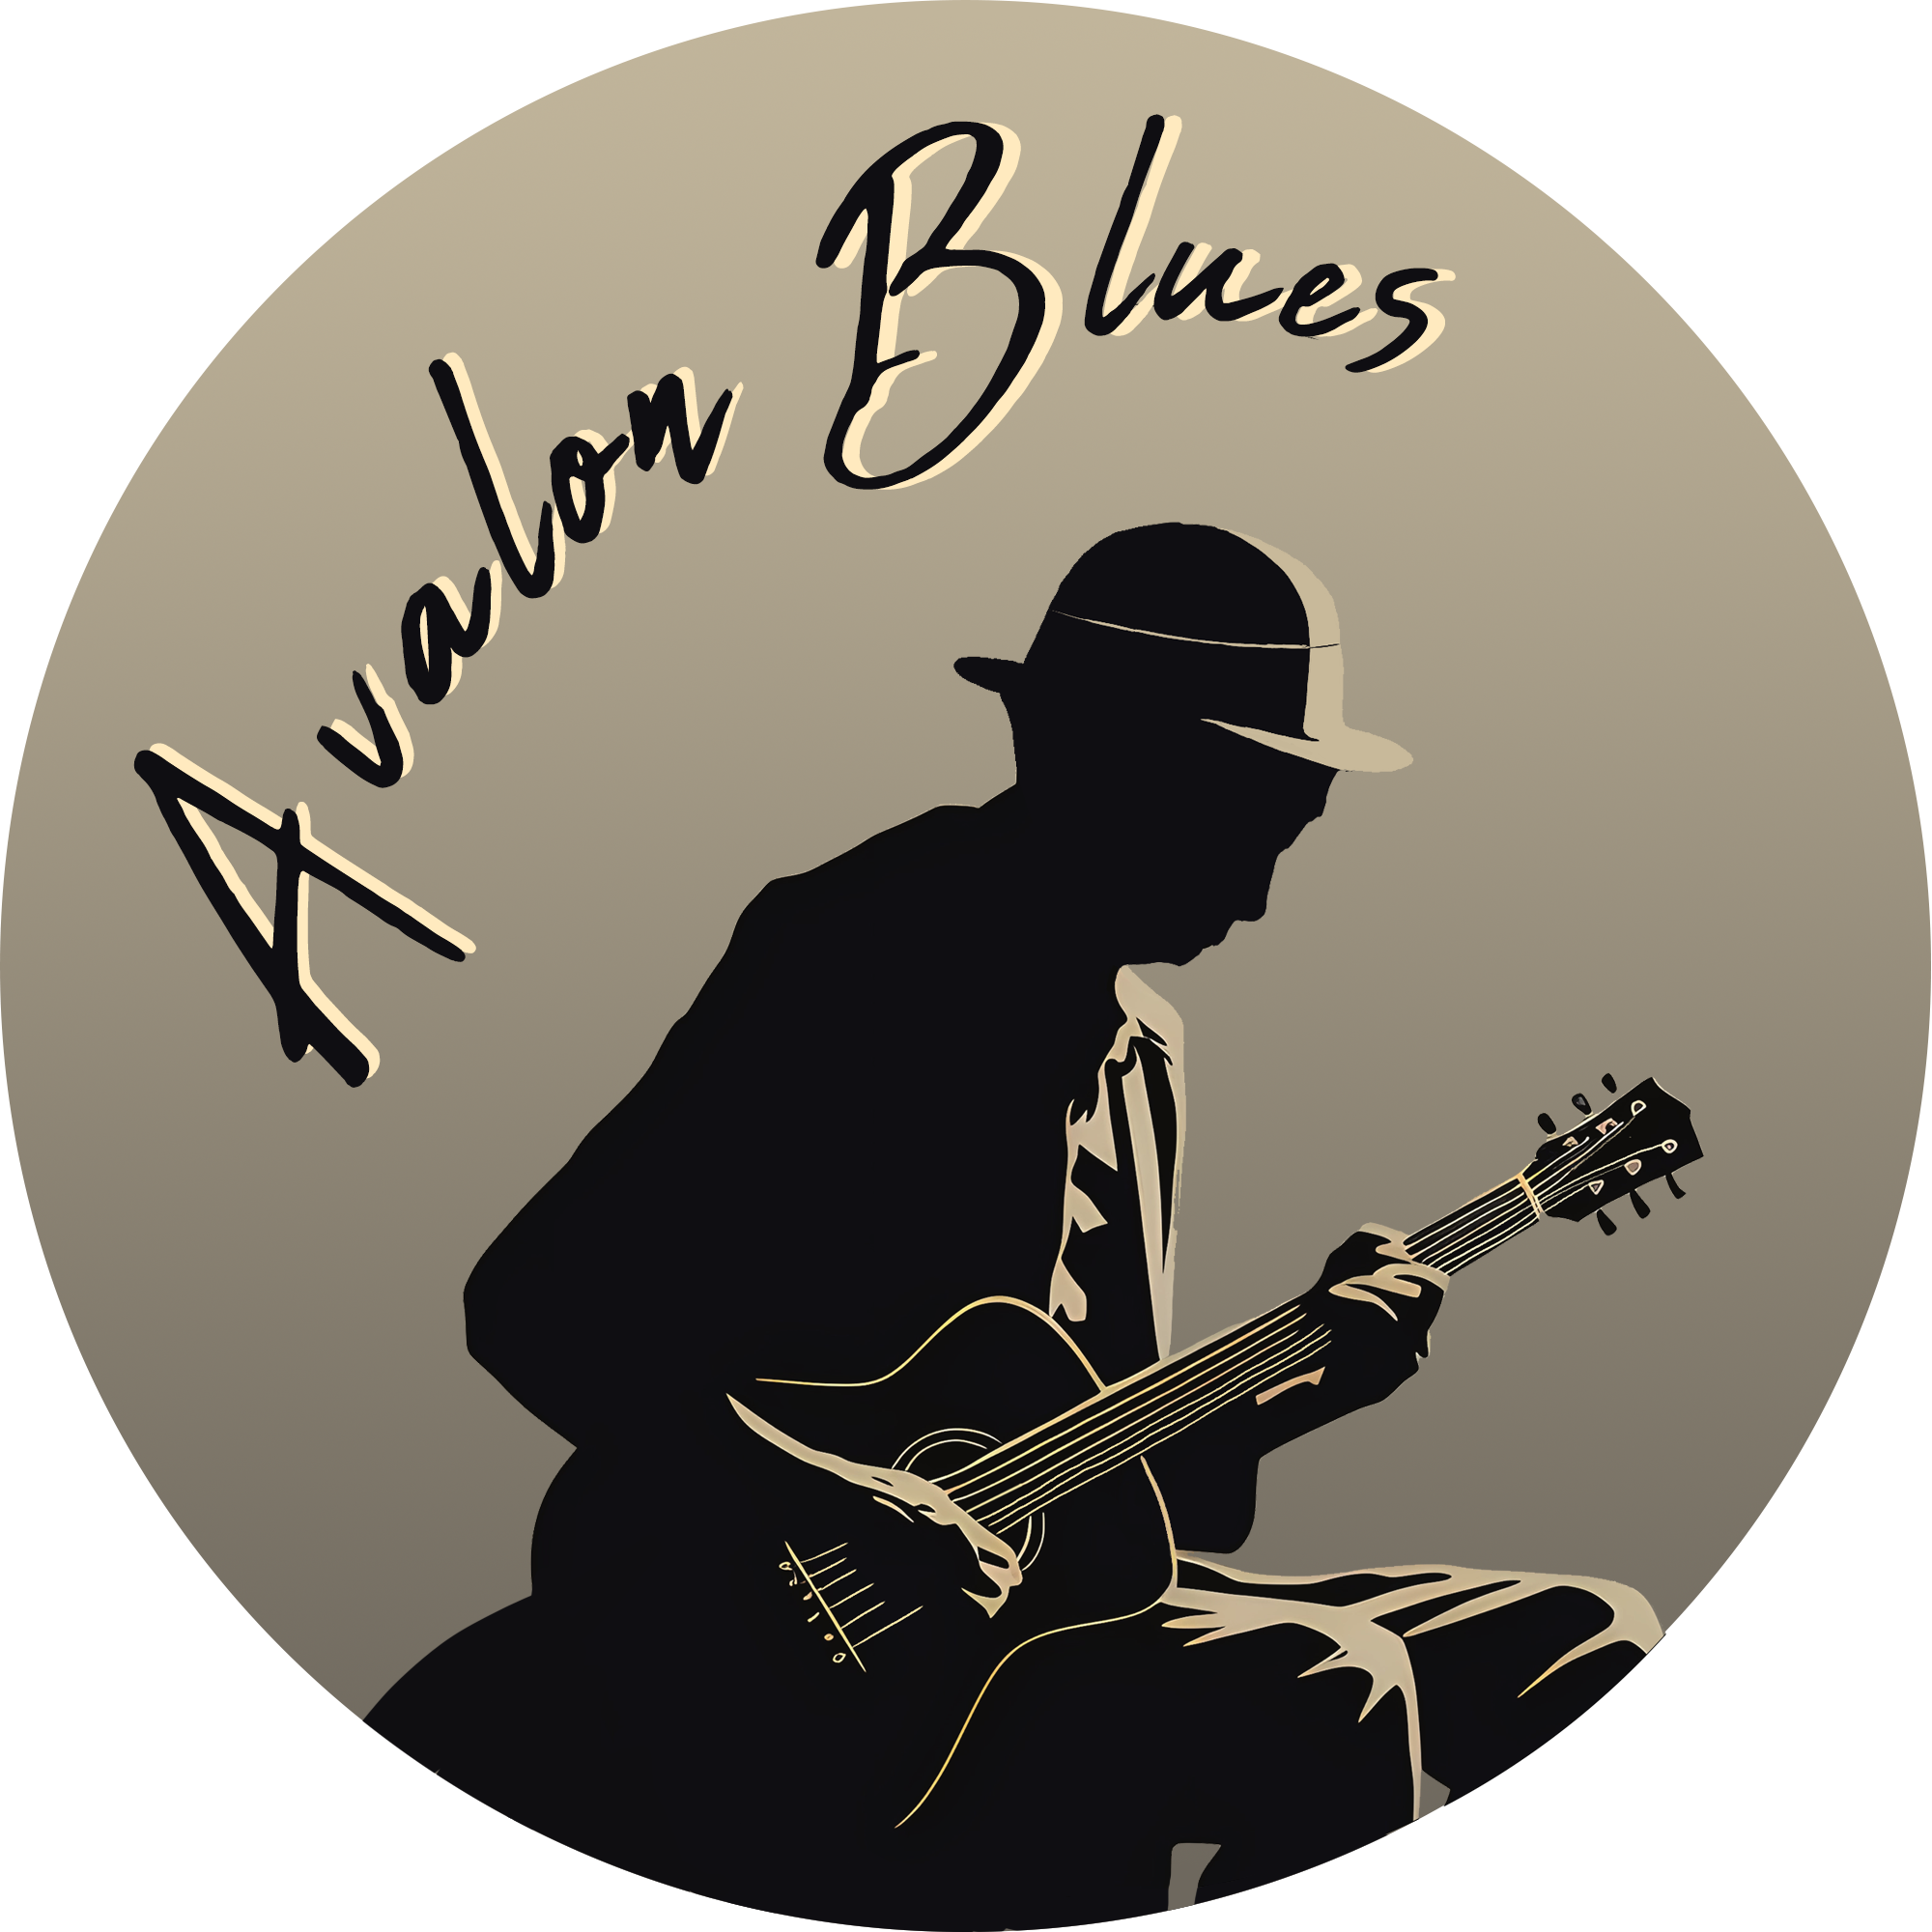 Avalon Blues